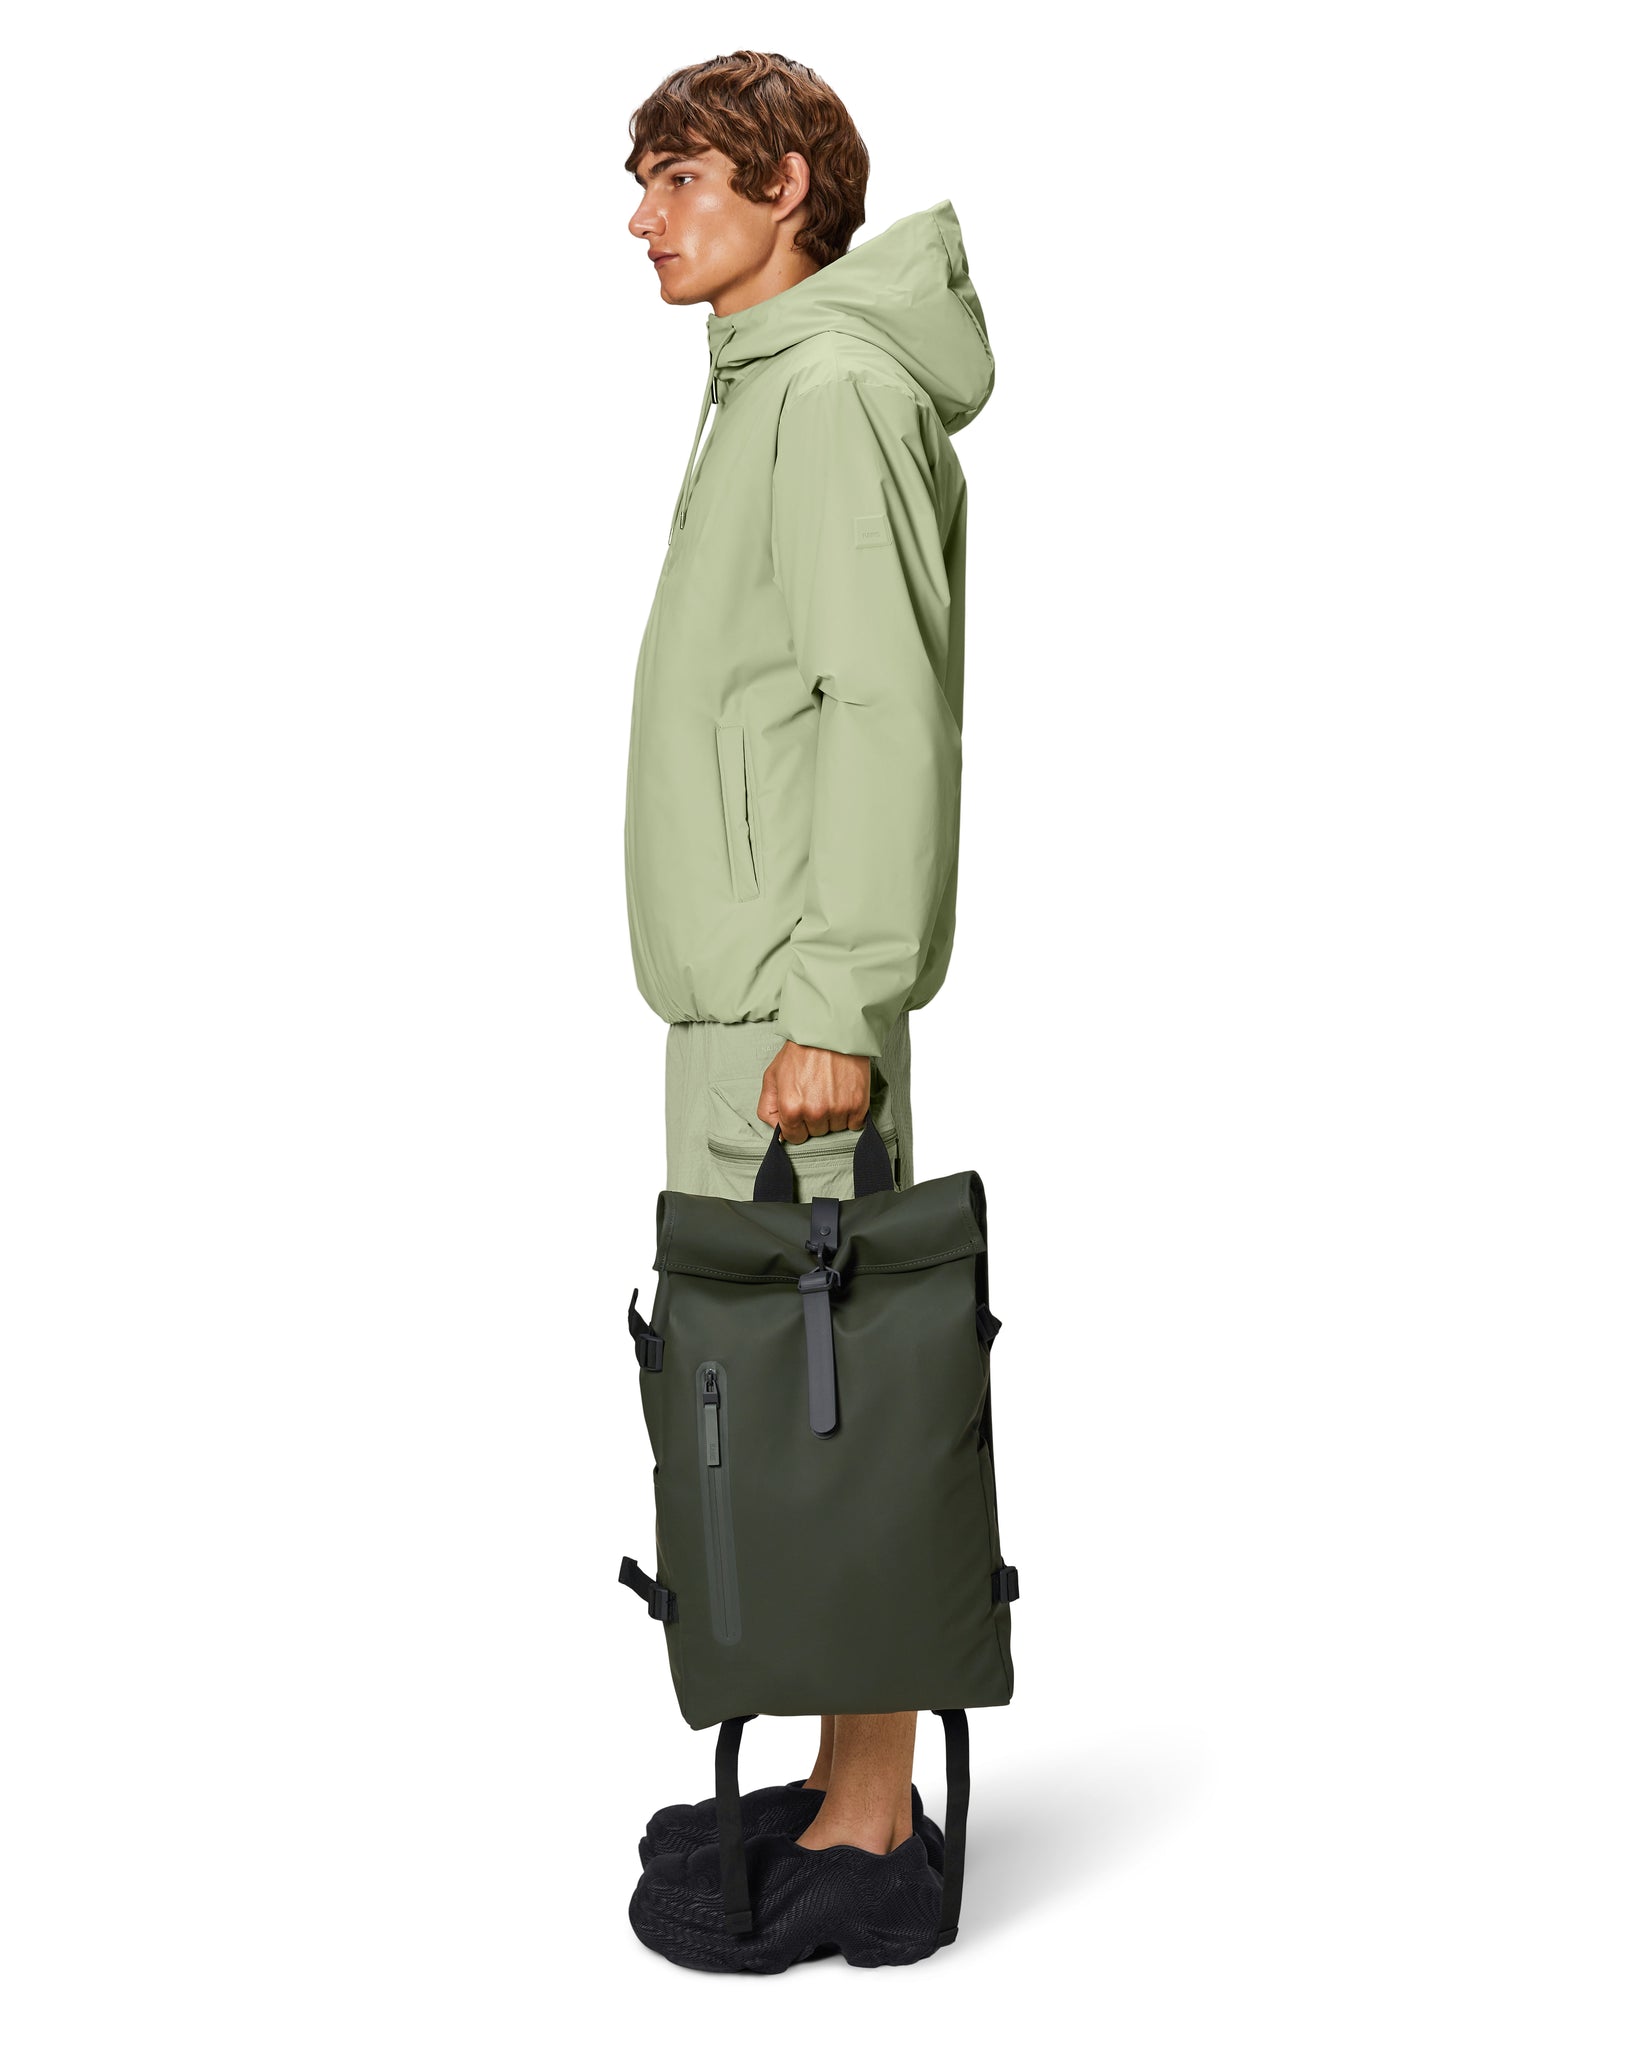 Rolltop Rucksack Large Backpack - Green